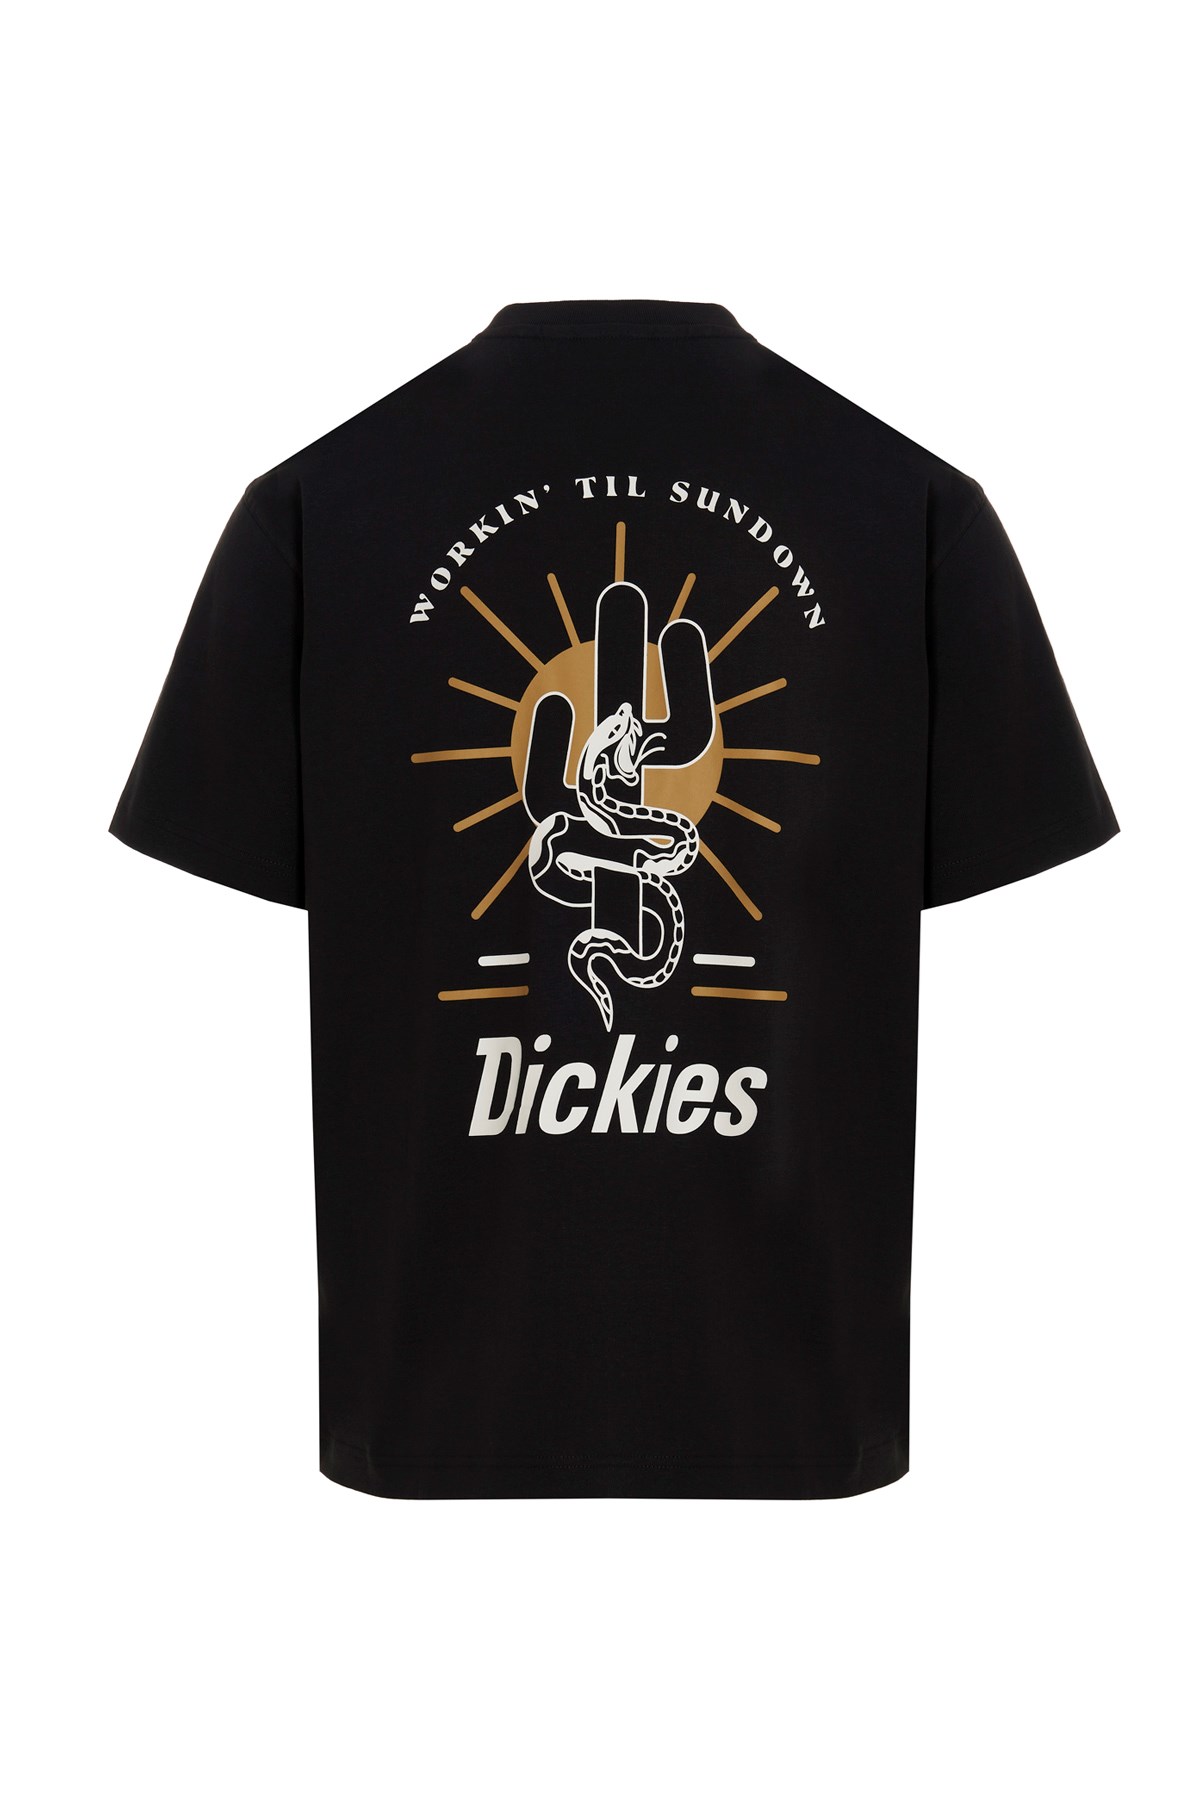 DICKIES ‘Bettles' T-Shirt